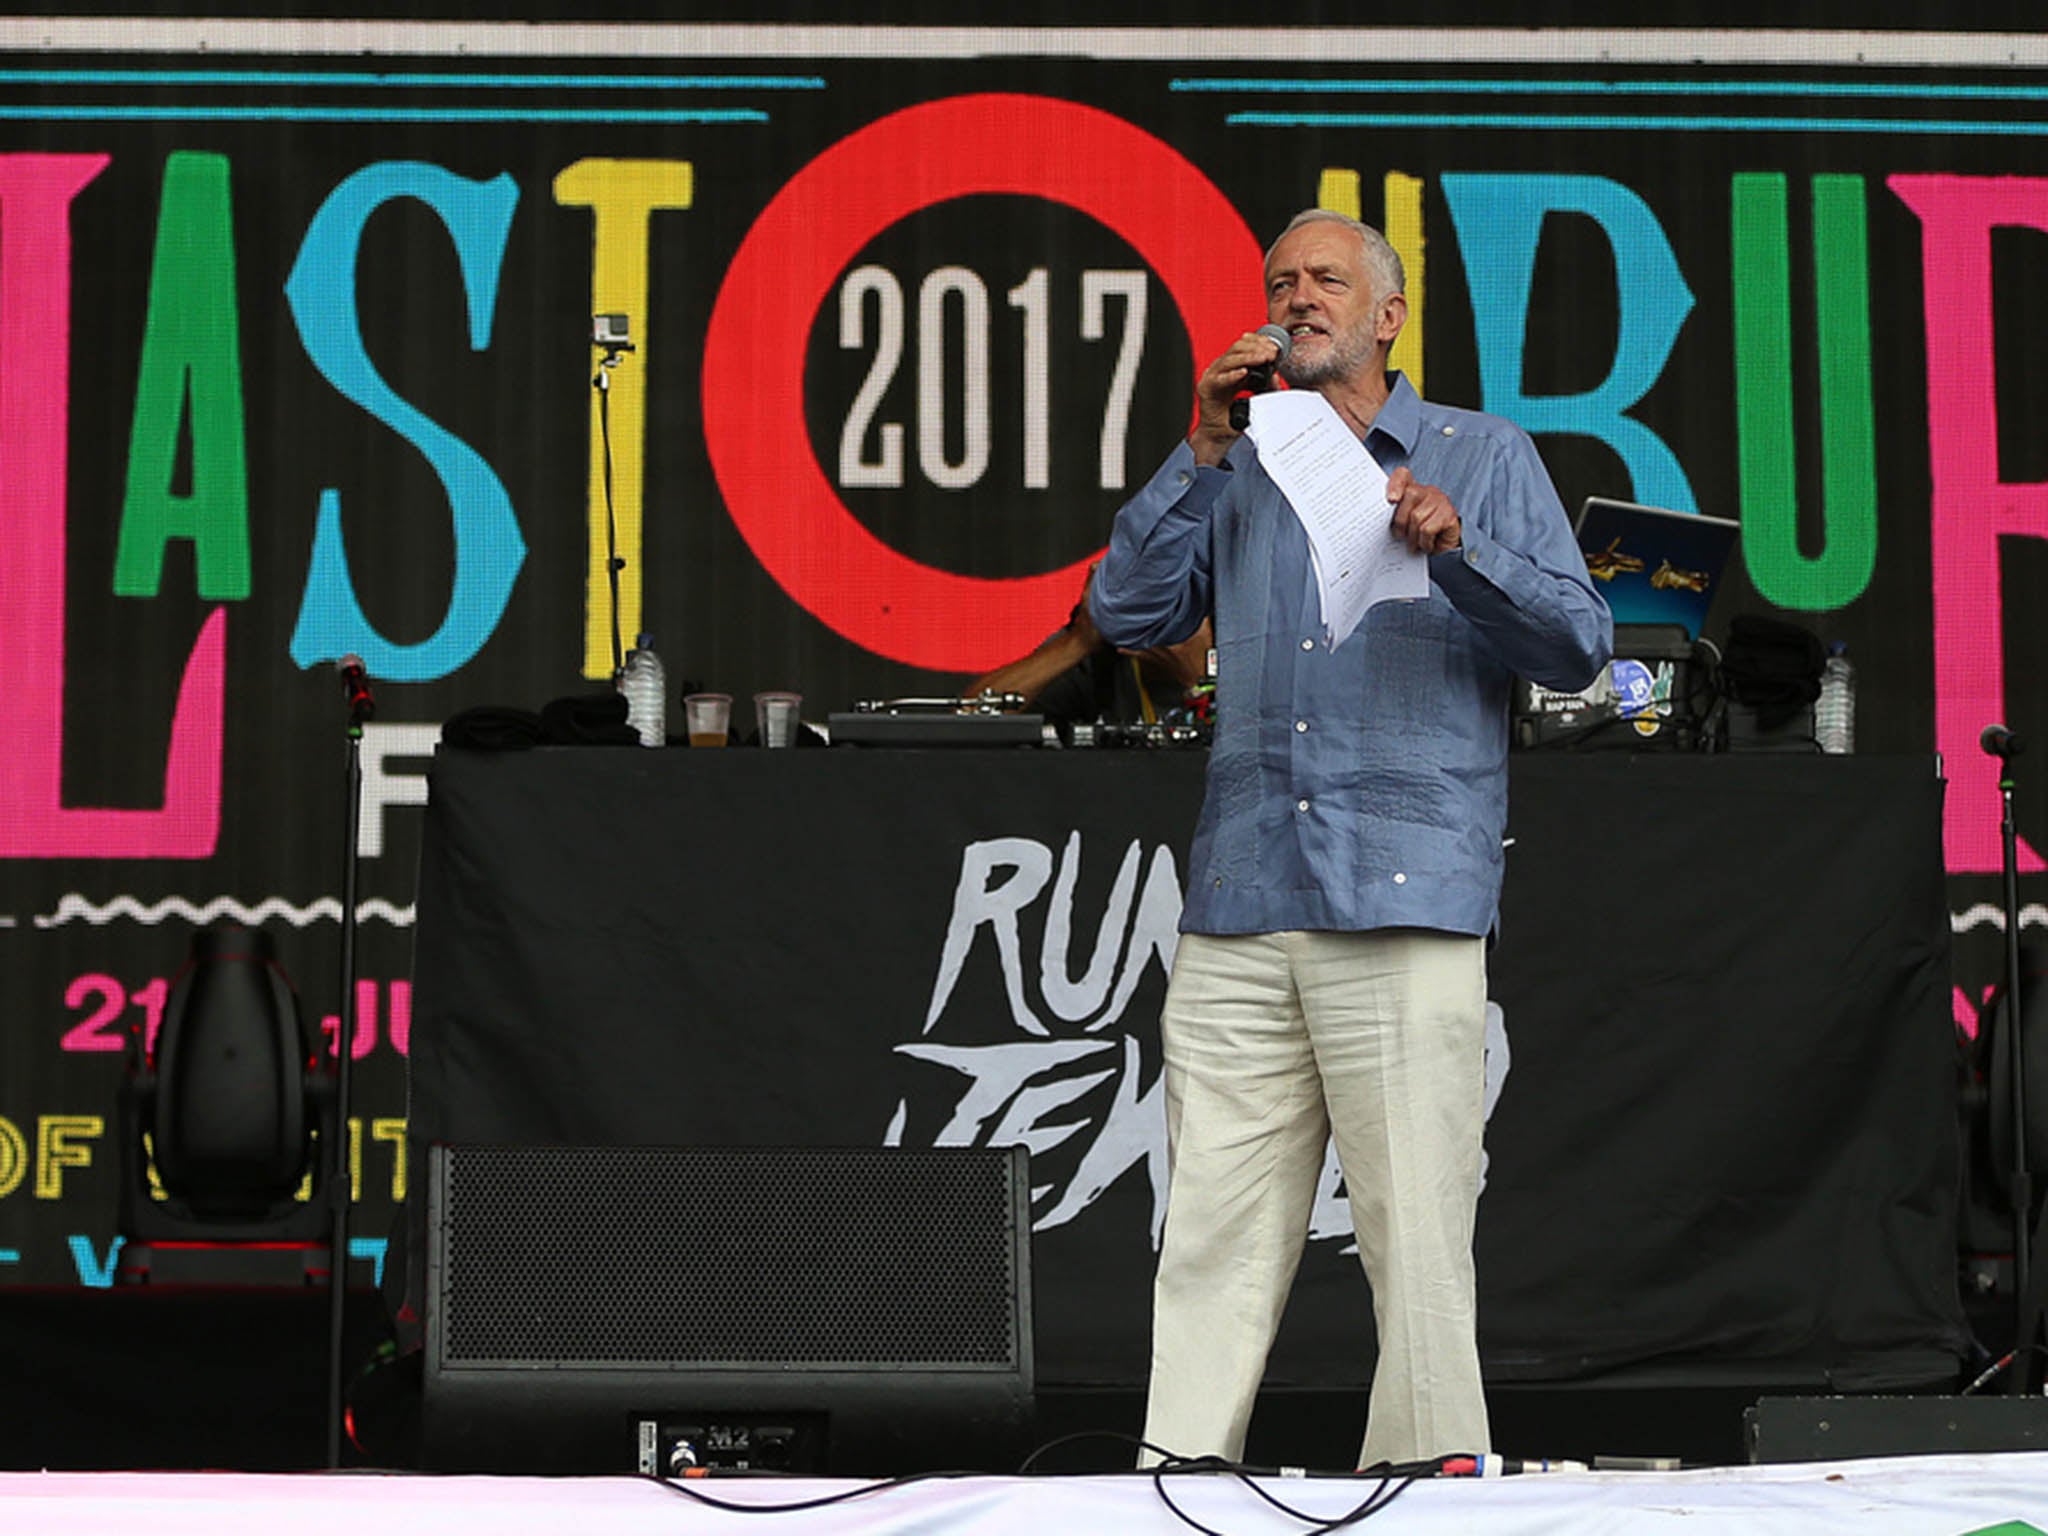 Jeremy Corbyn spoke at this summer's Glastonbury Festival